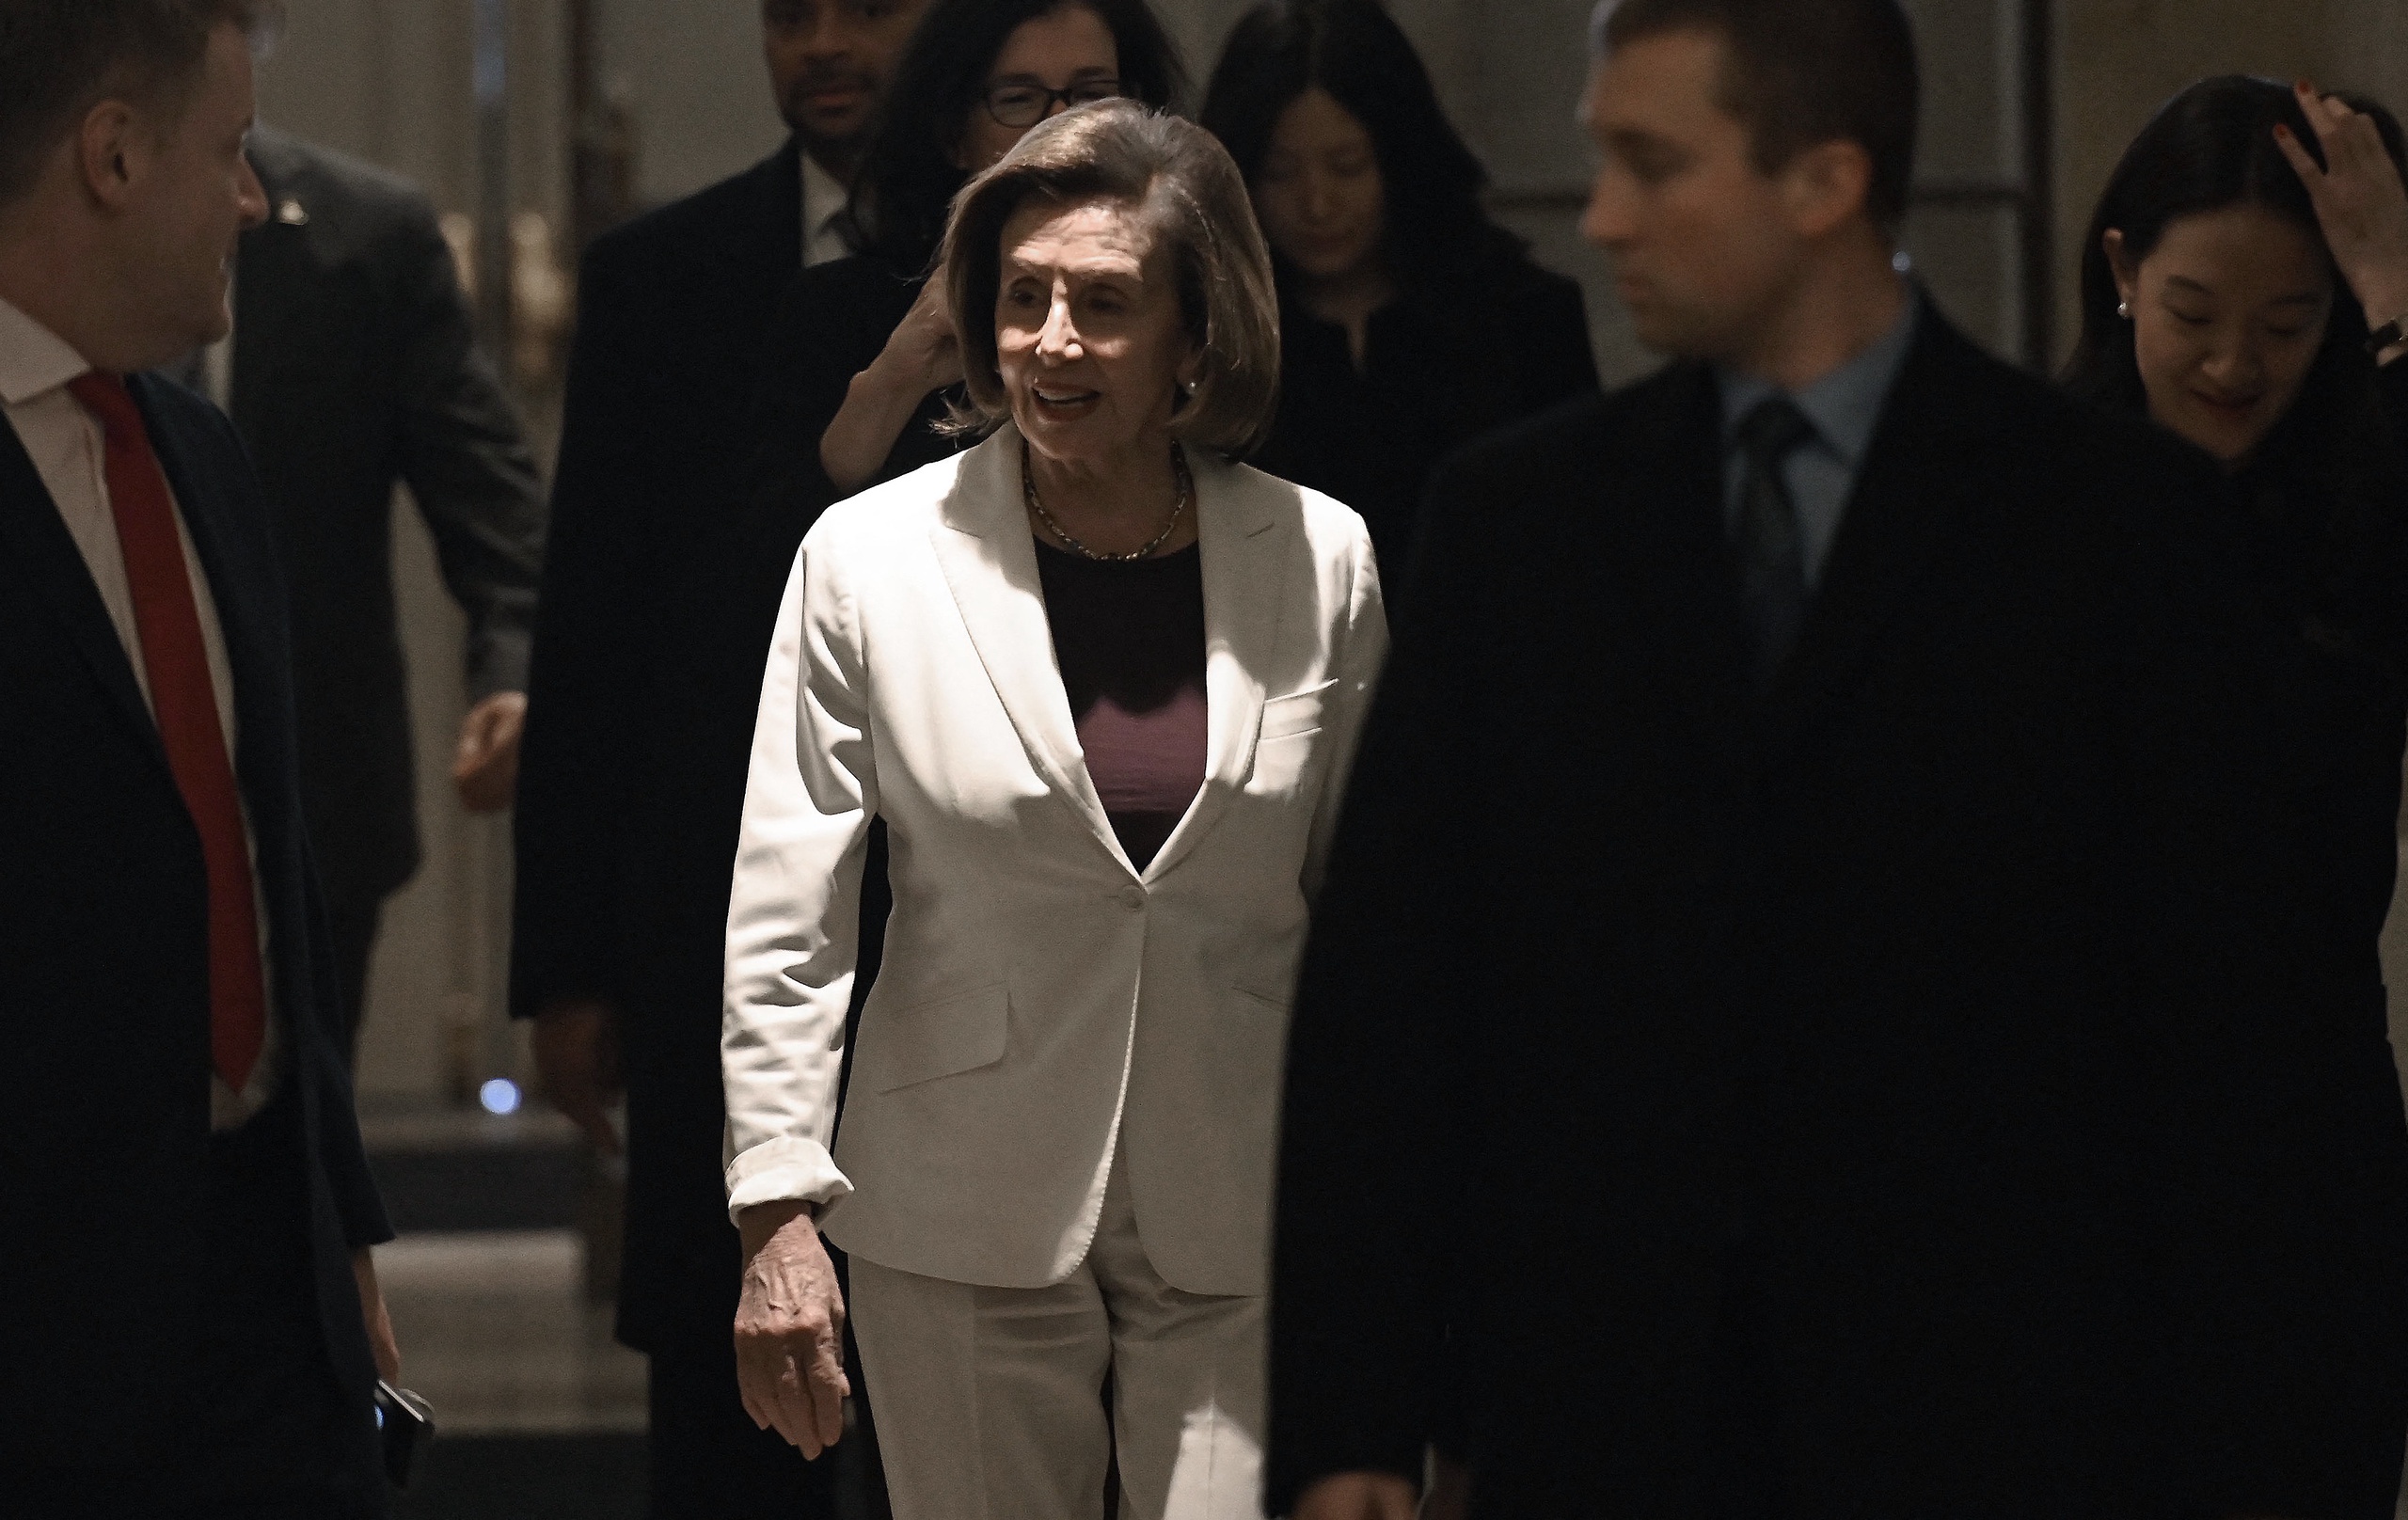 De Amerikaanse toppolitica Nancy Pelosi stelt zich niet herkiesbaar als fractievoorzitter van de Democratische Partij in het Huis van Afgevaardigden. Pelosi zegt wel aan te blijven als afgevaardigde om de belangen van haar district te blijven behartigen. 